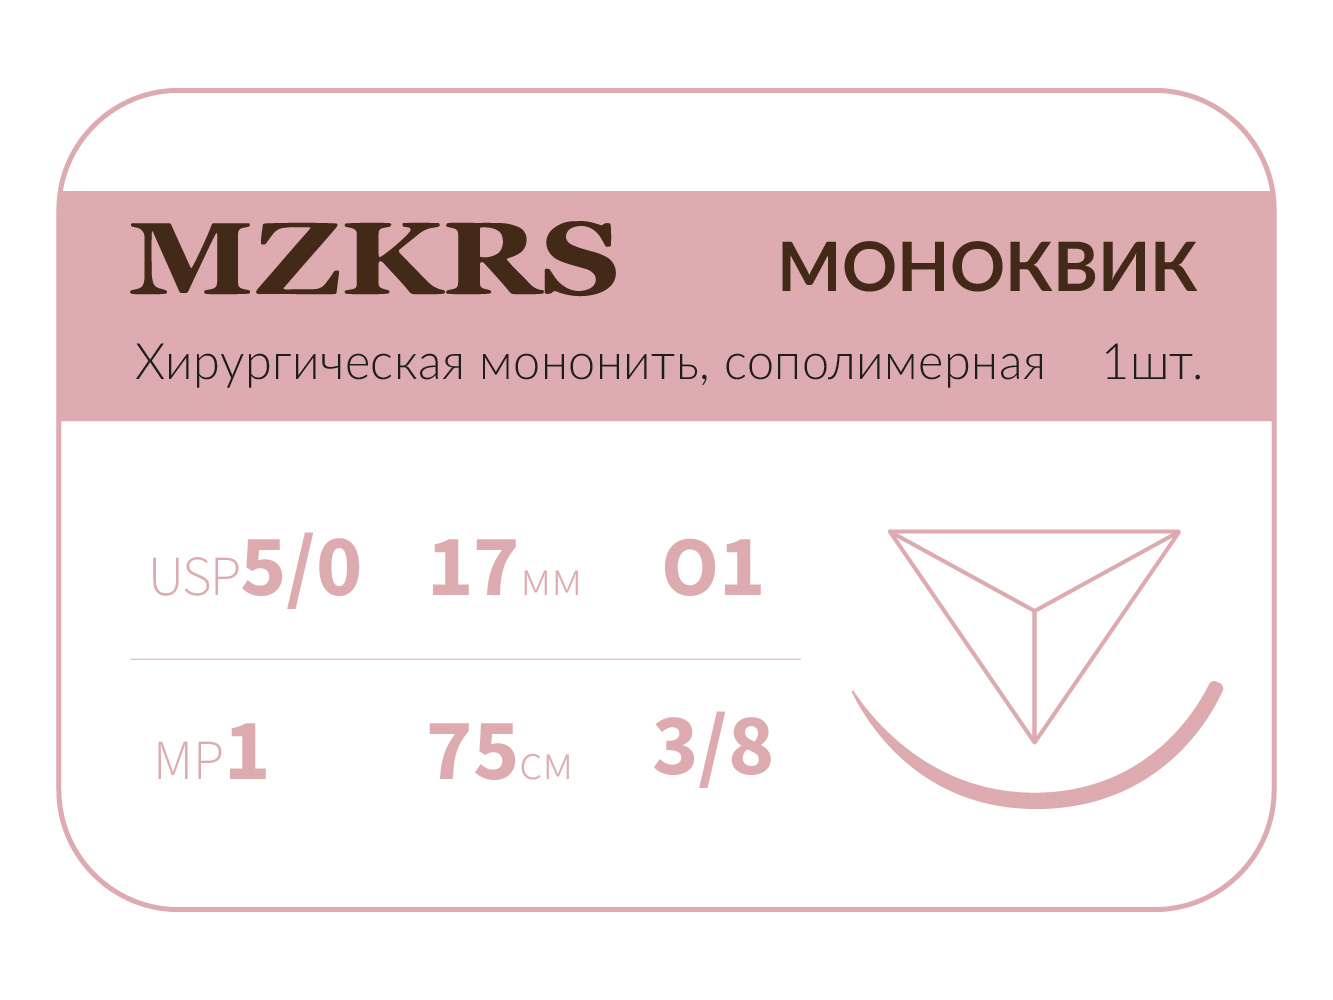 1738О1 Premium-5/0 (1)75 МОНК МОНОКВИК хирургическая мононить, сополимерная, MZKRS (Россия)